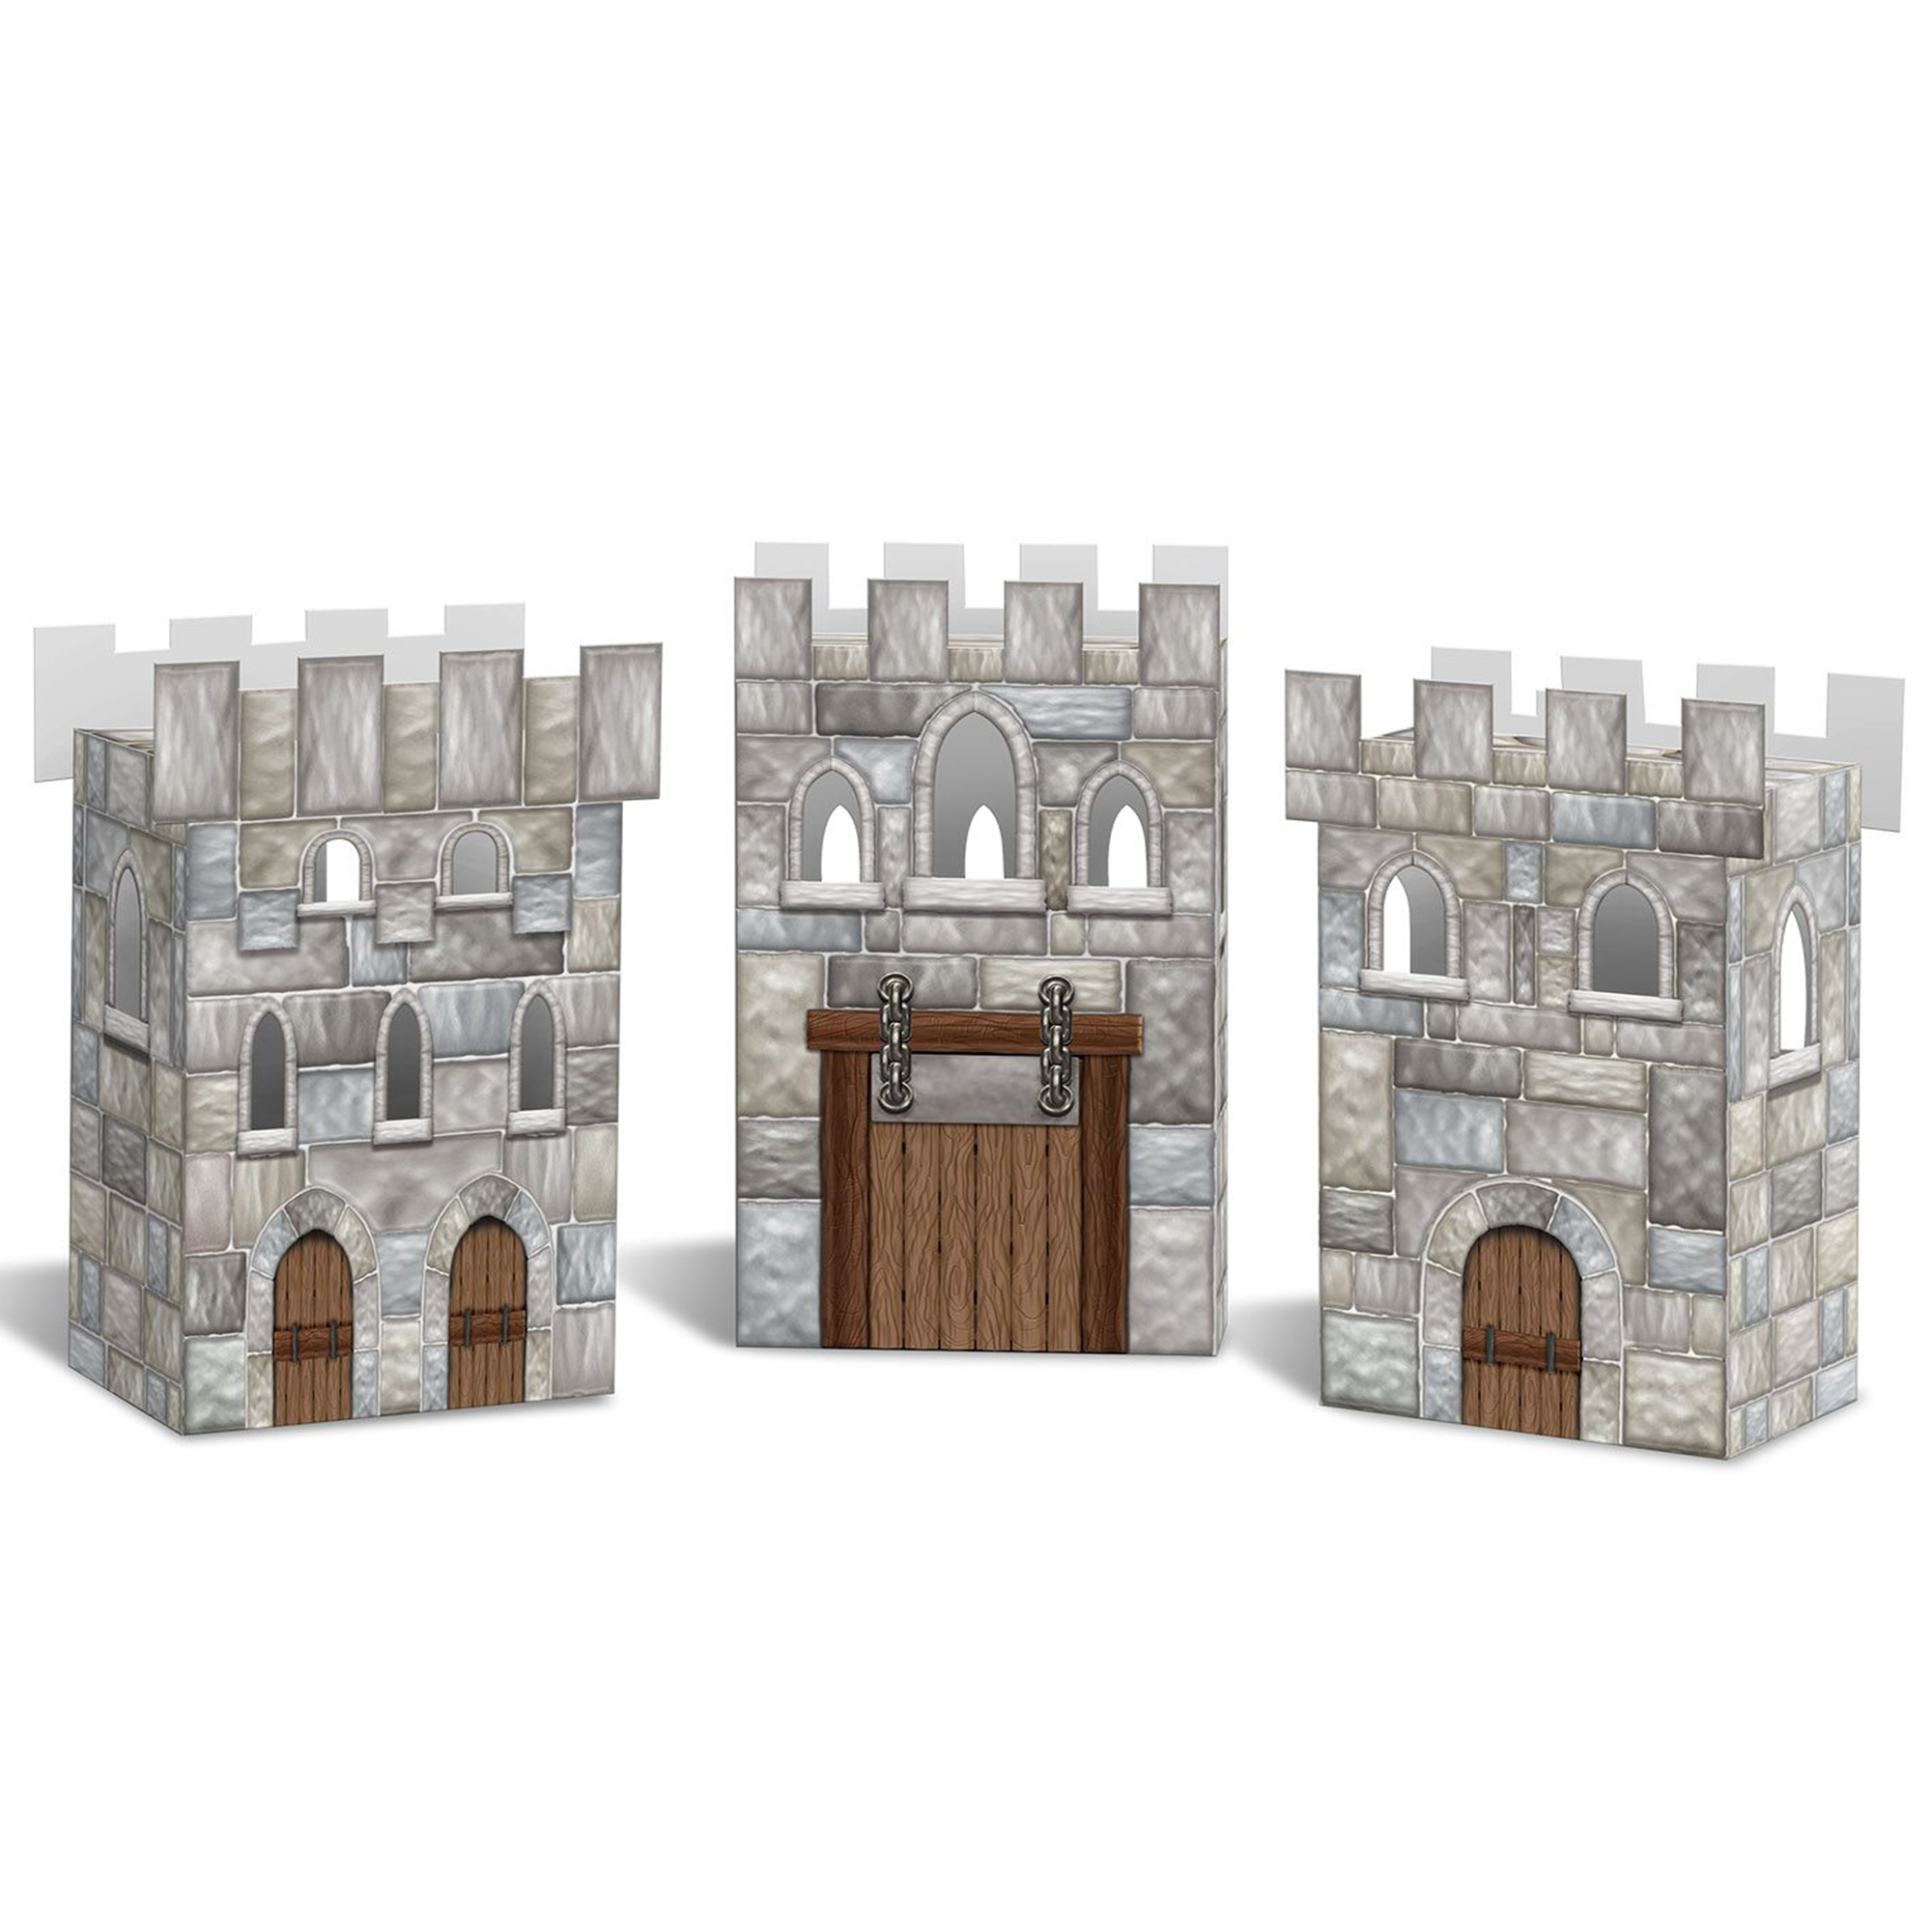 Castle Favor Boxes - 3 Per Unit by Windy City Novelties